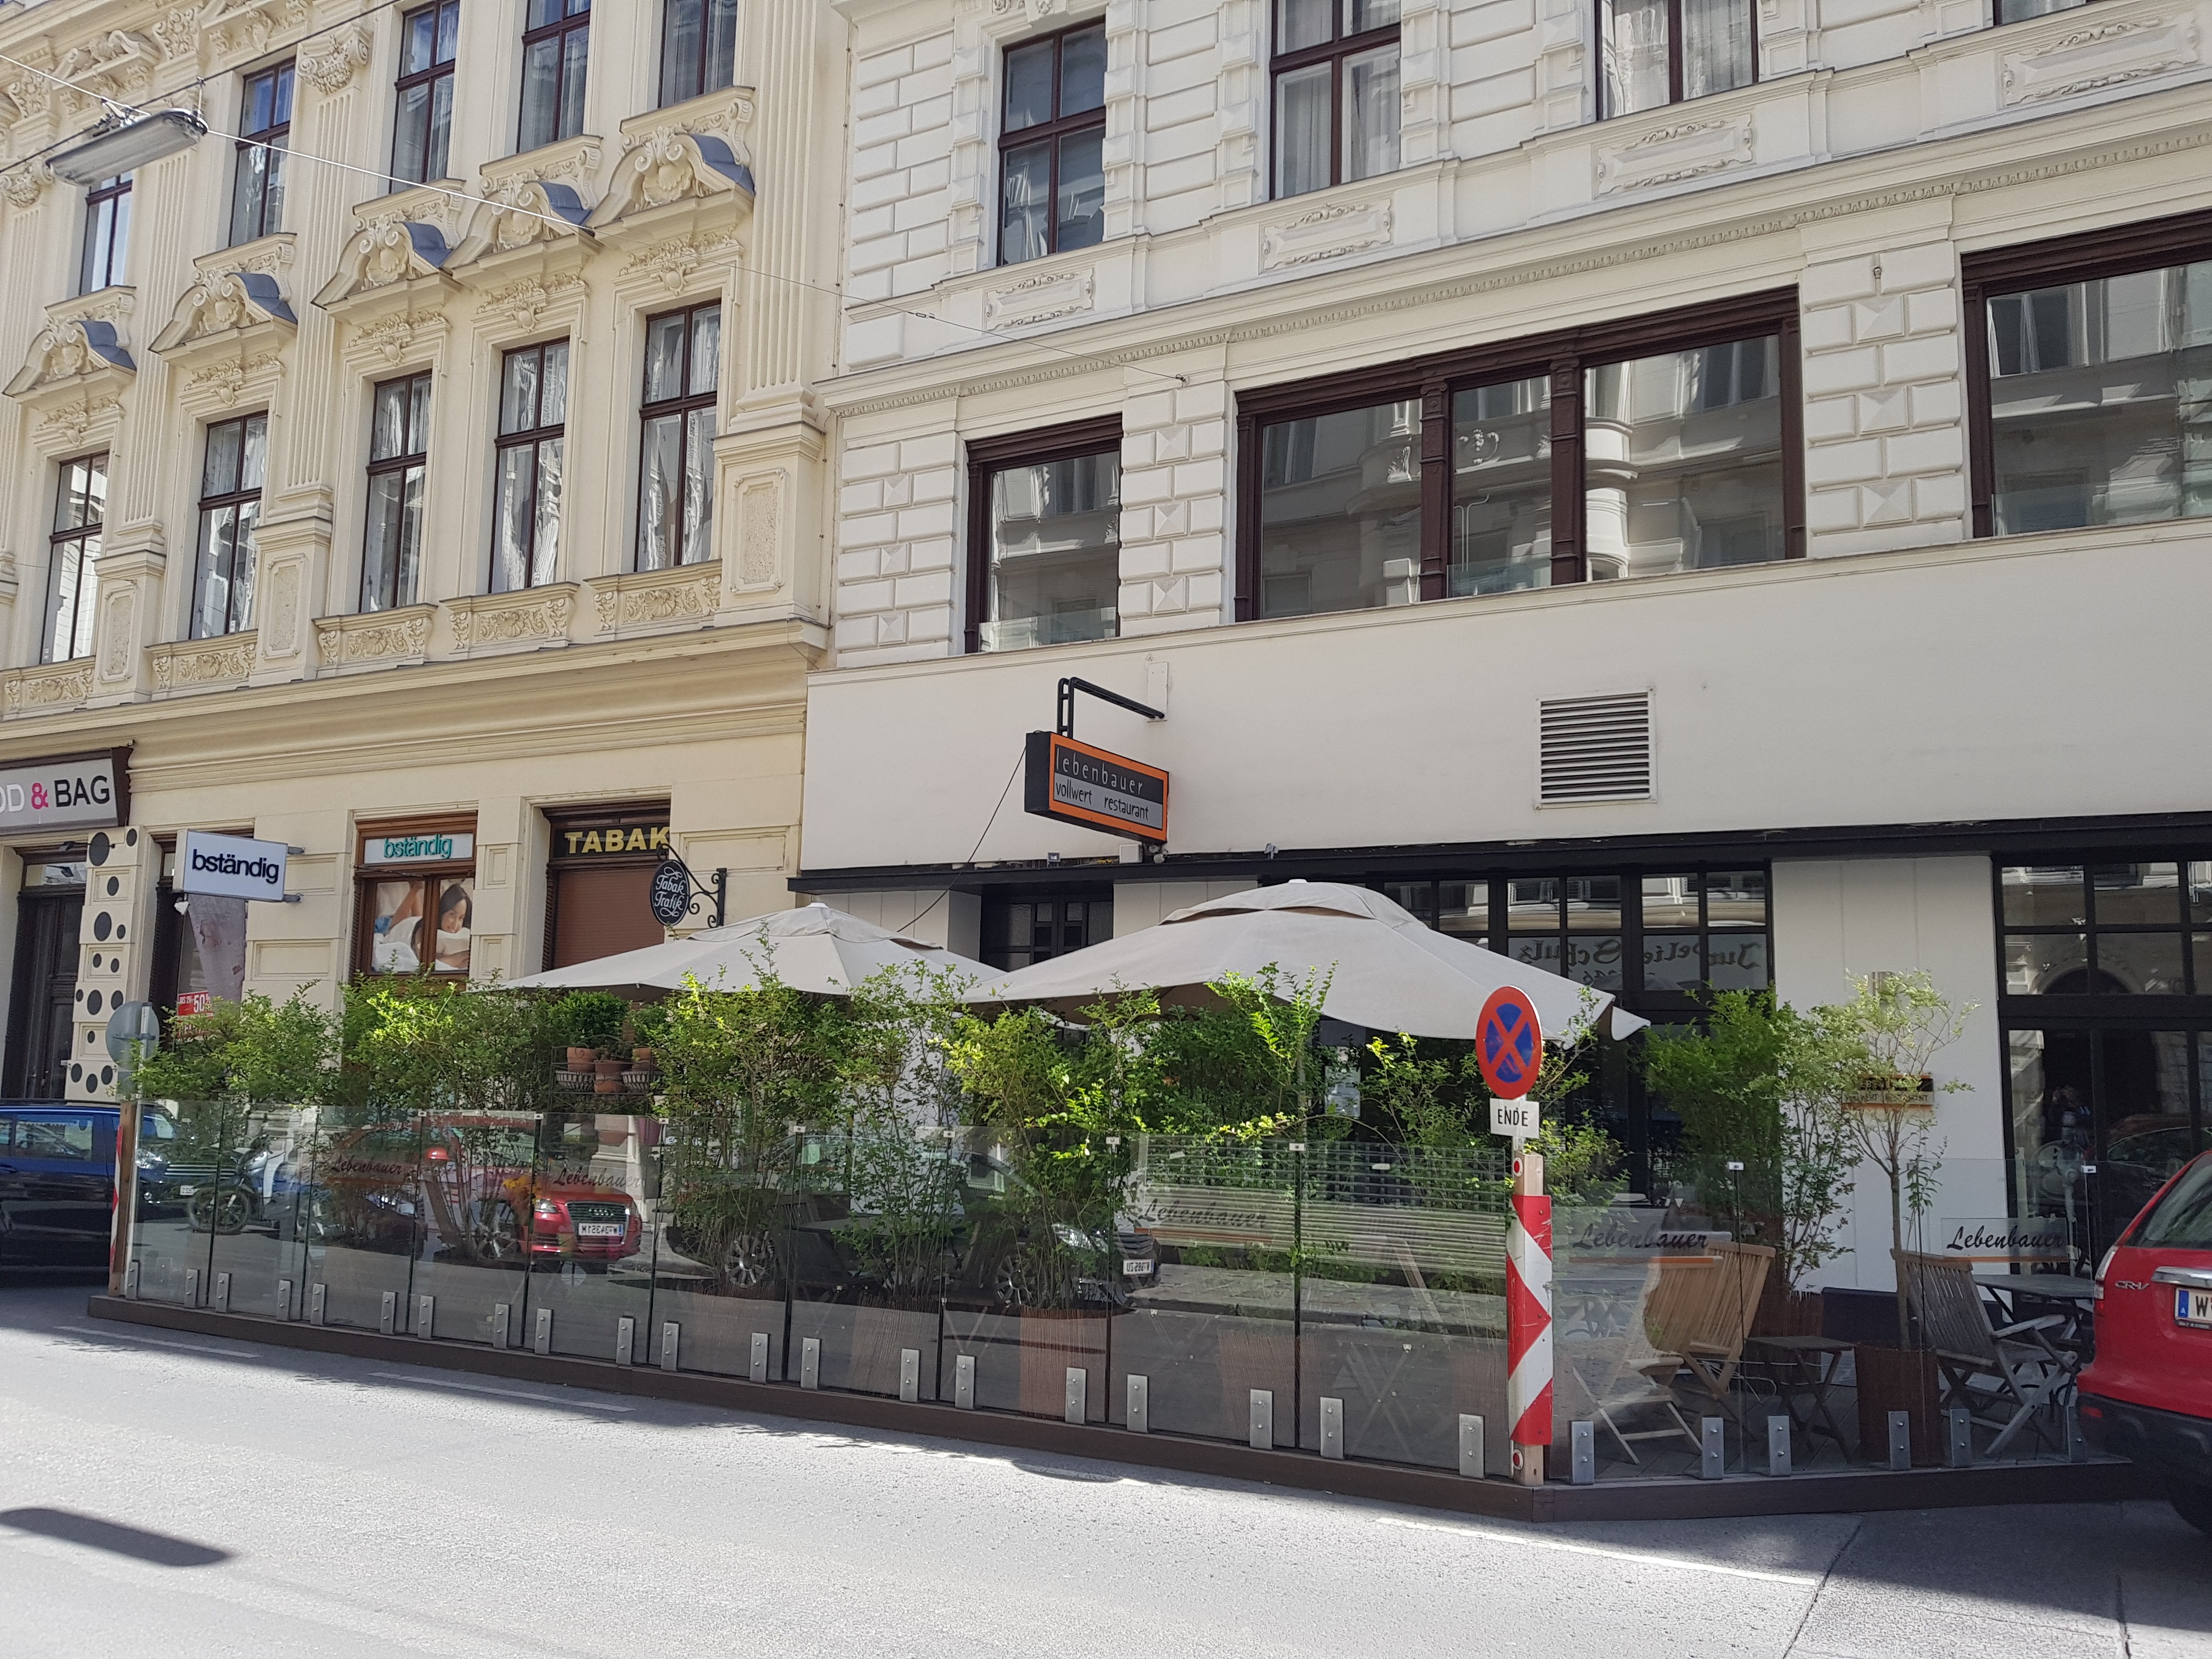 Restaurant Lebenbauer, Vienna: All Year